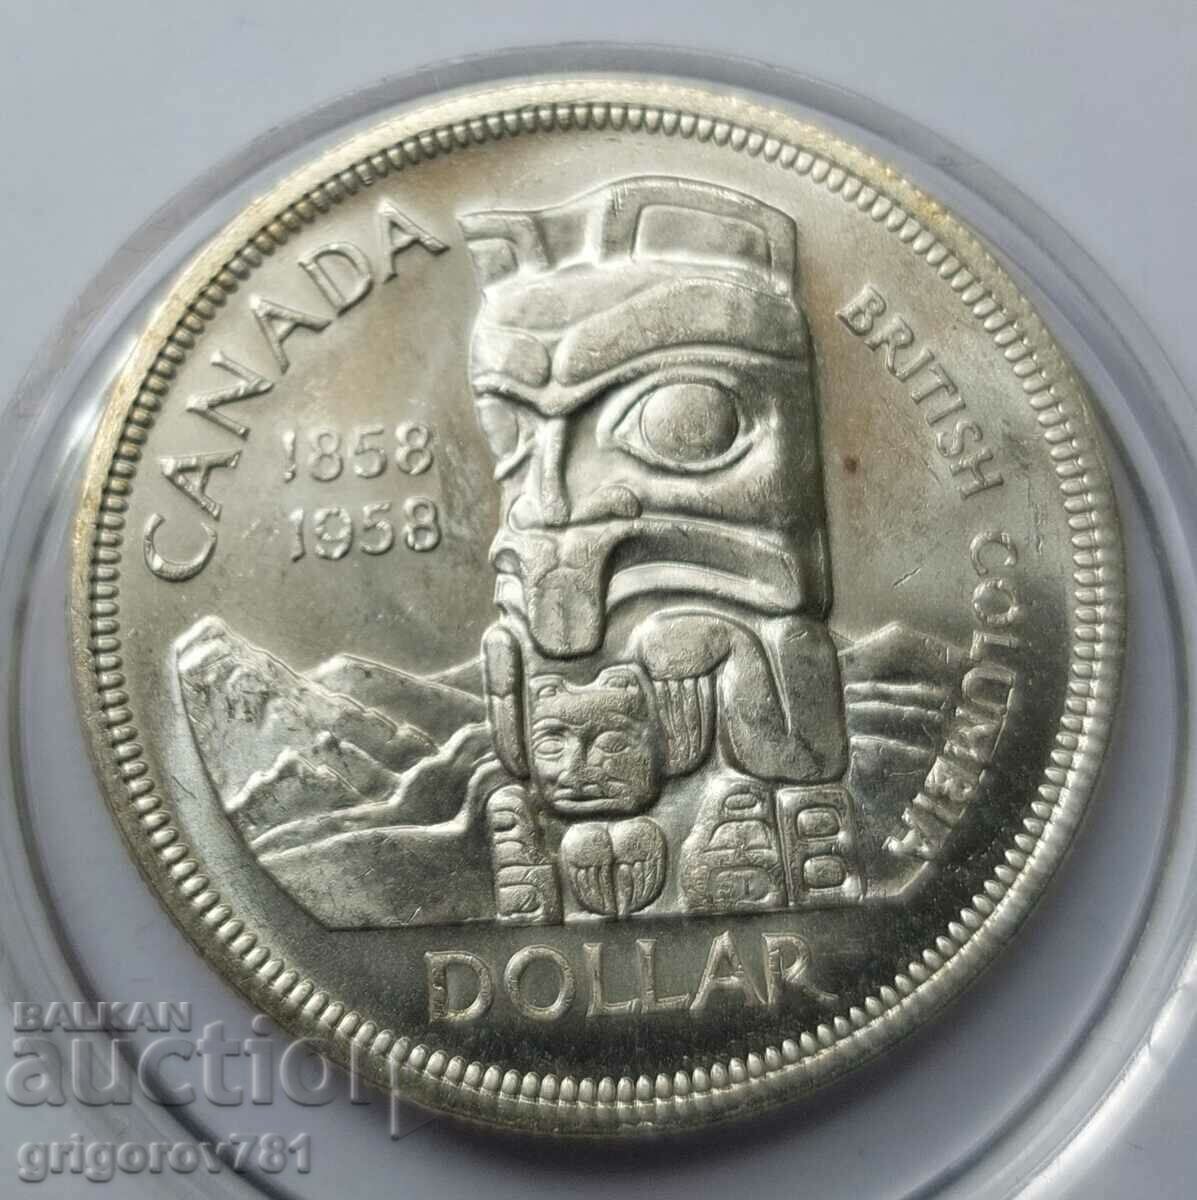 1 dollar silver Canada 1958 - silver coin